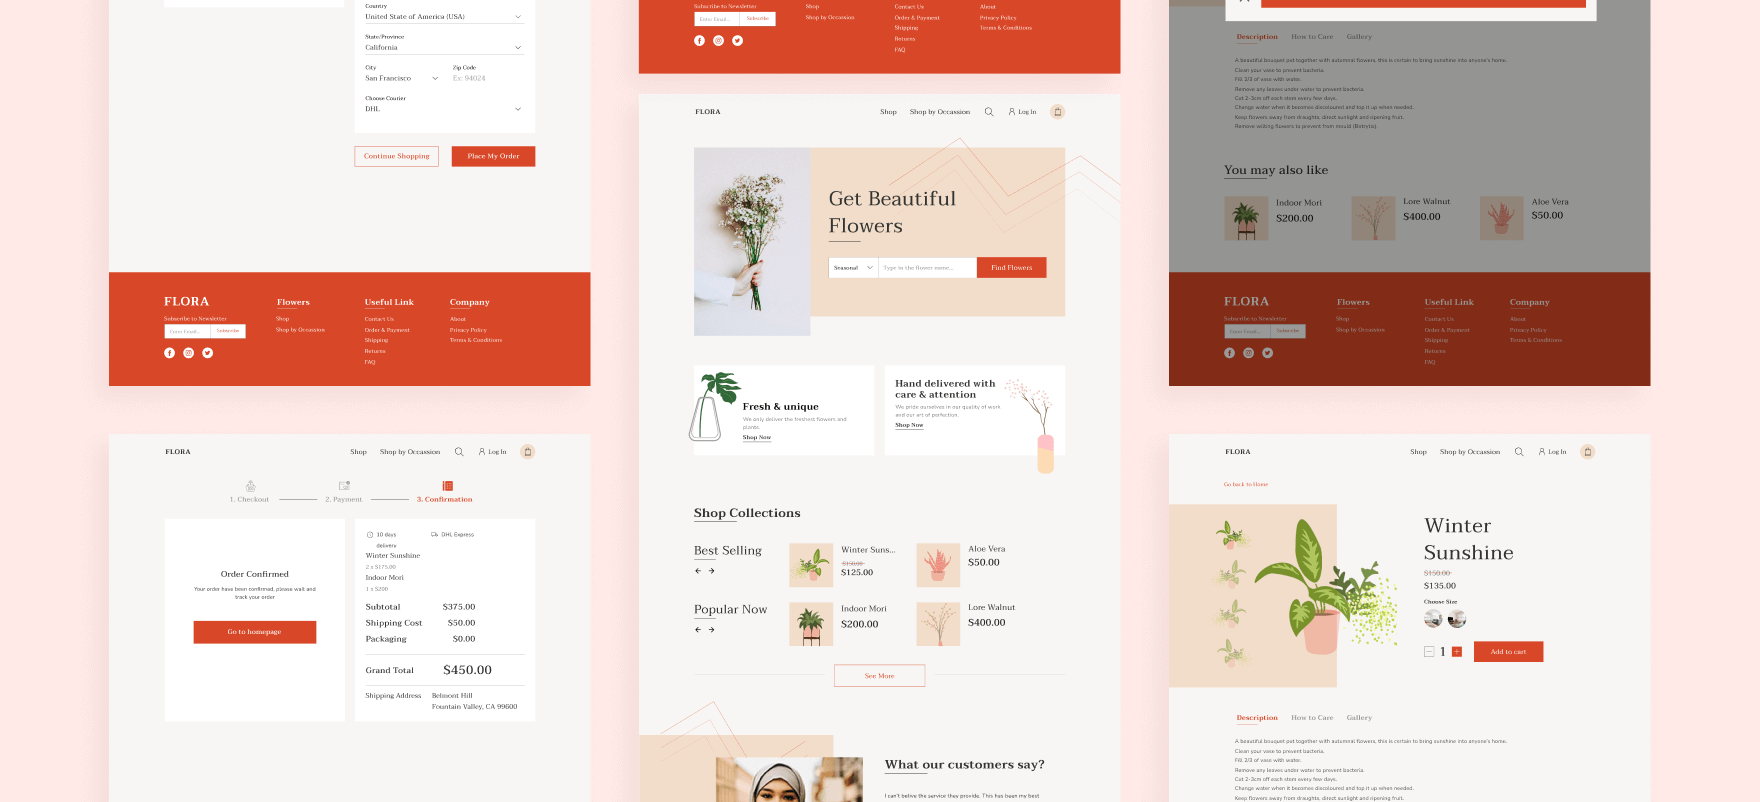 Flora: An Online Flower Shop [Case Study]